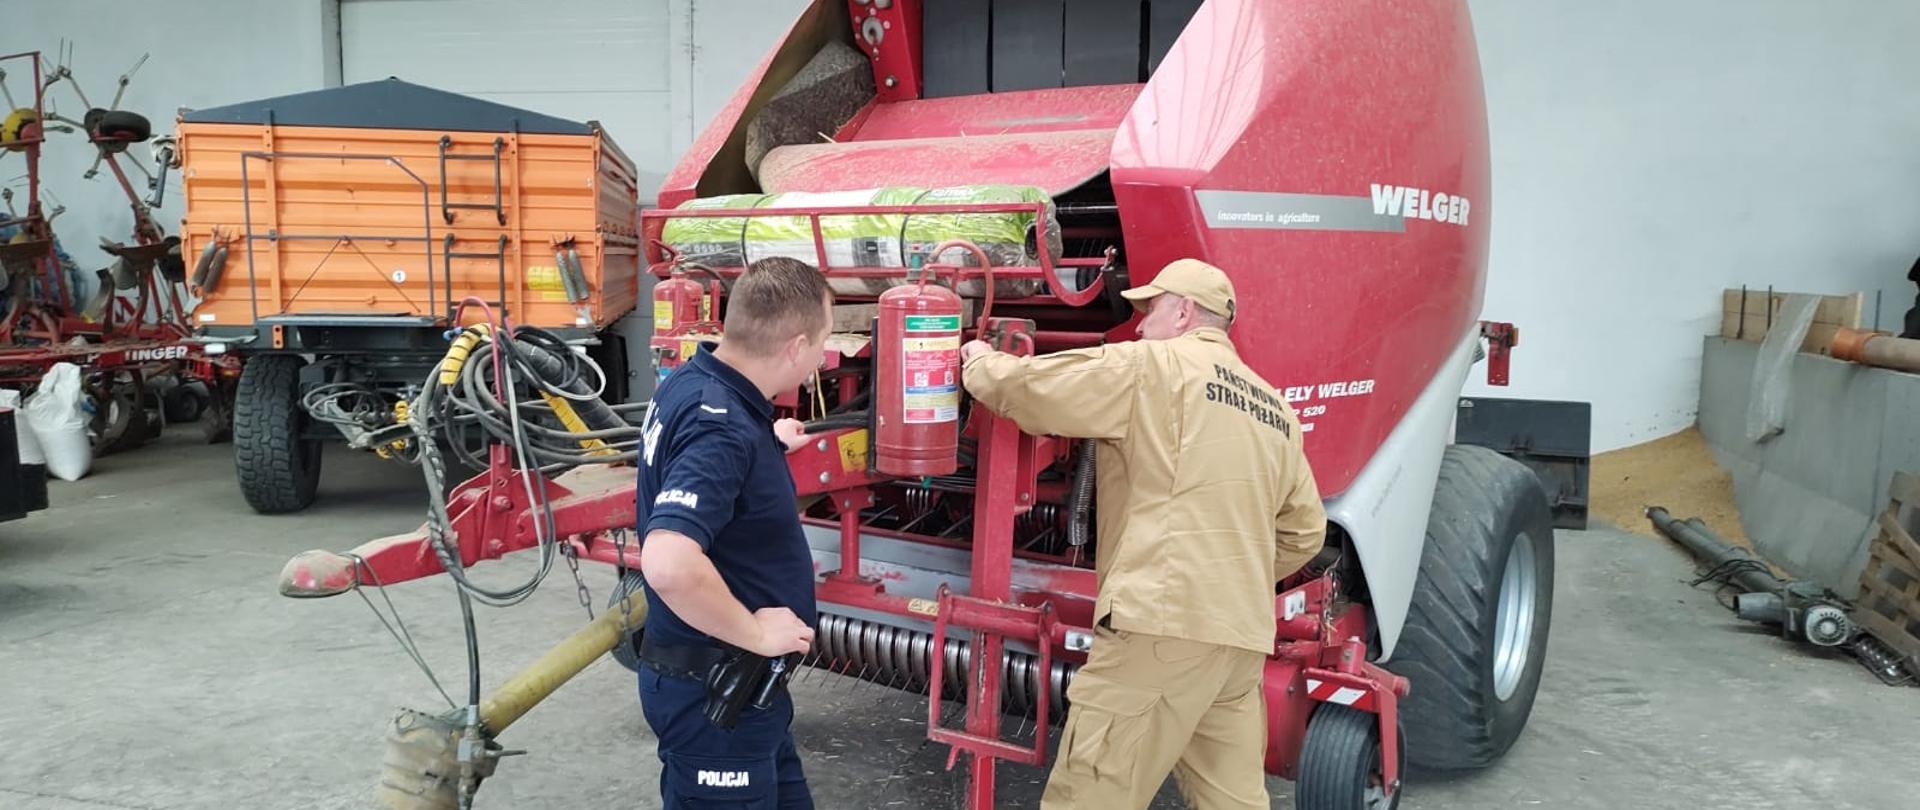 Przy czerwonej maszynie rolniczej - presie, stoi policjant i strażak, który sprawdza znajdującą się na maszynie gaśnicę.